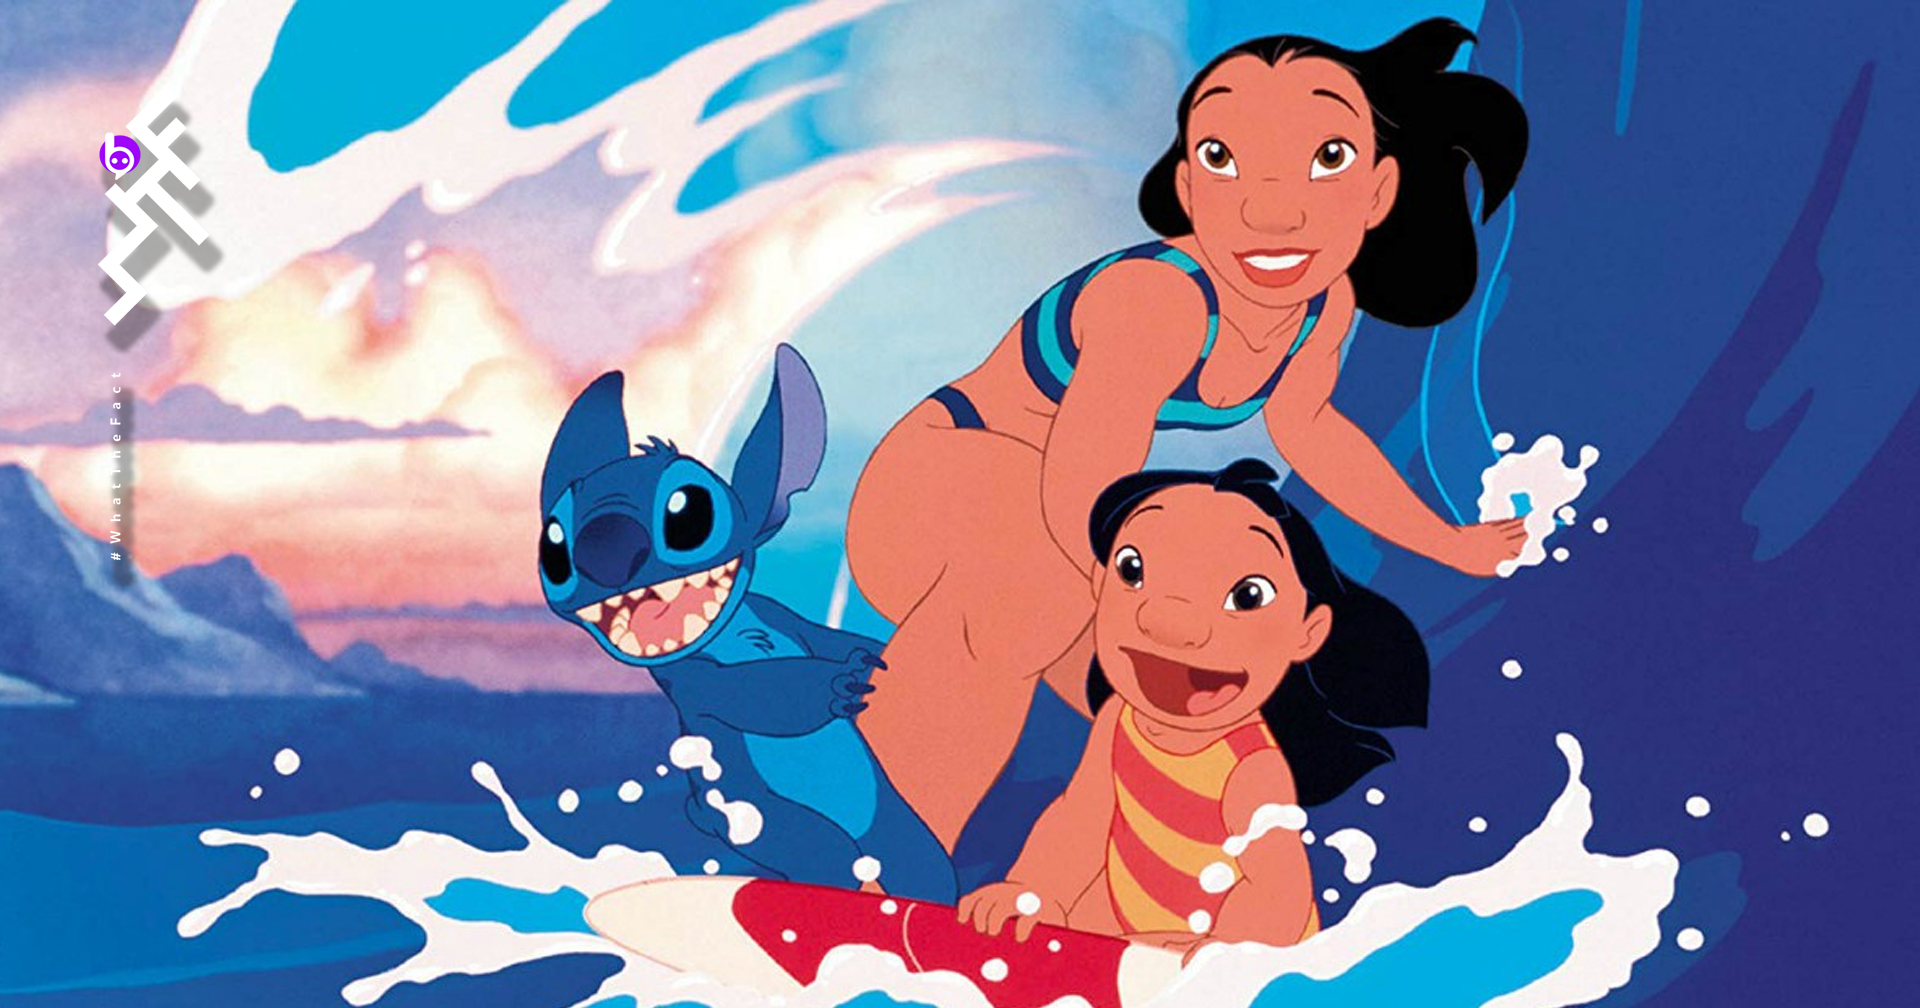 ผู้กำกับ Crazy Rich Asians เจรจากำกับ Lilo & Stitch ฉบับไลฟ์แอ็กชันของ Disney